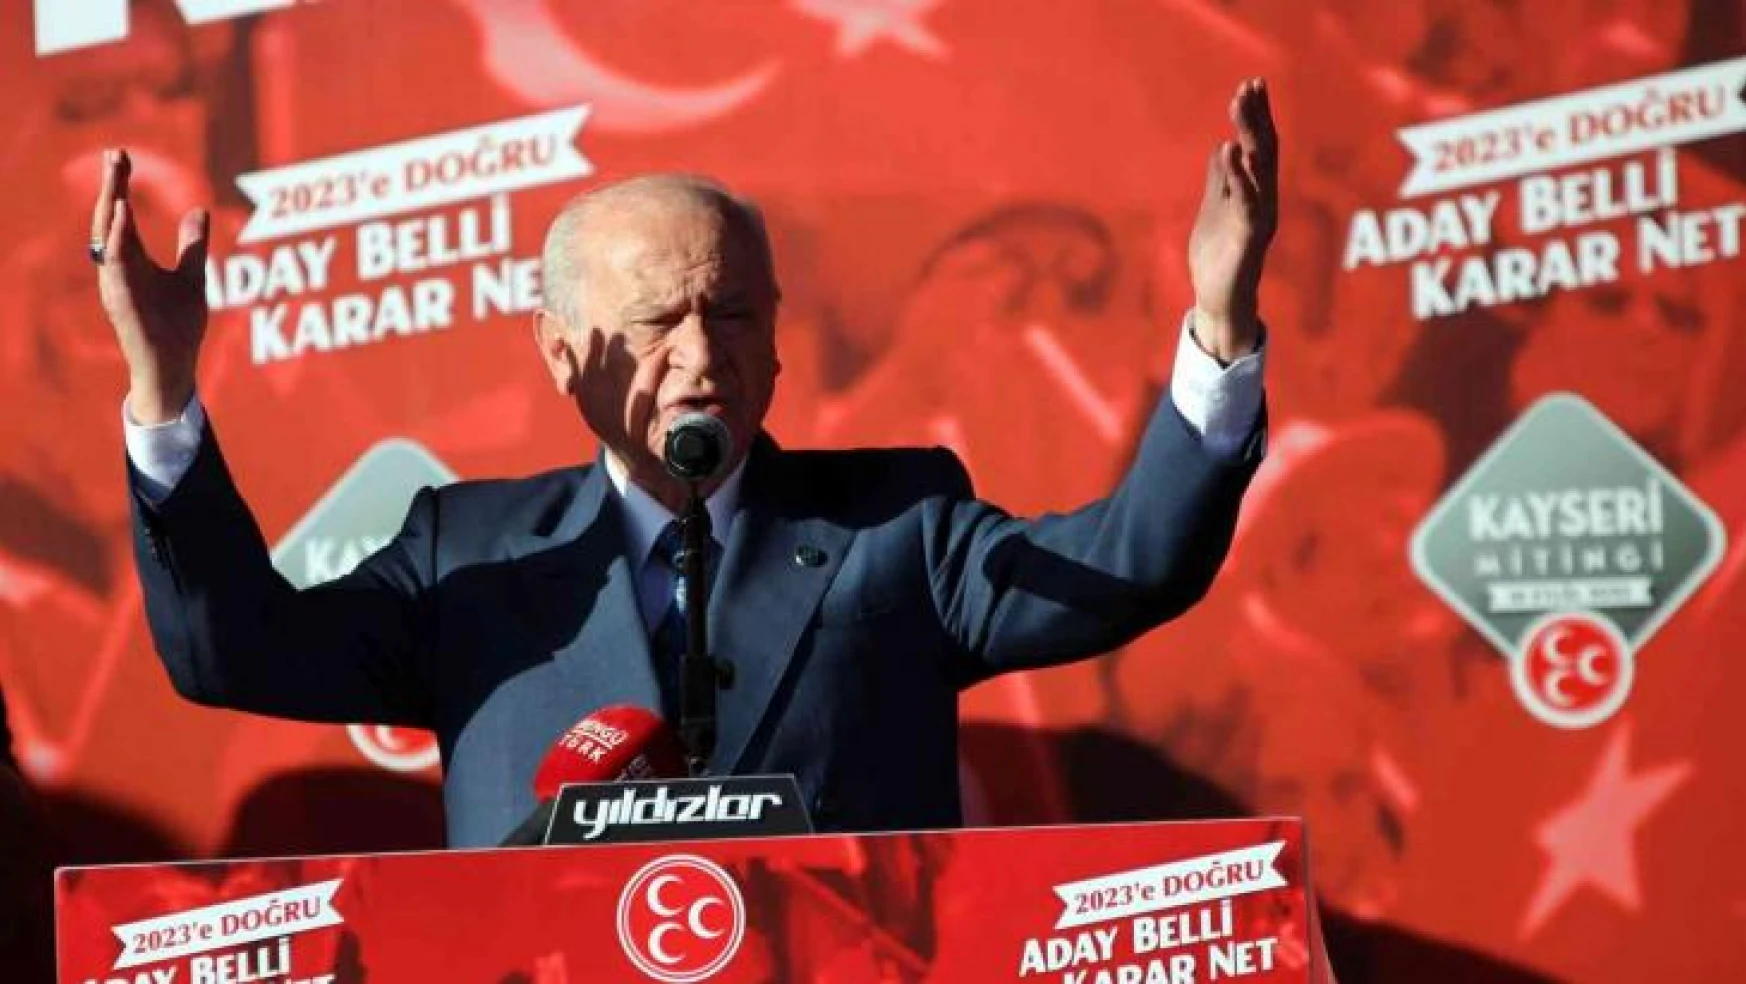 MHP Lideri Devlet Bahçeli: '2023 yılında Cumhurbaşkanı adayımız Recep Tayyip Erdoğan'dır'